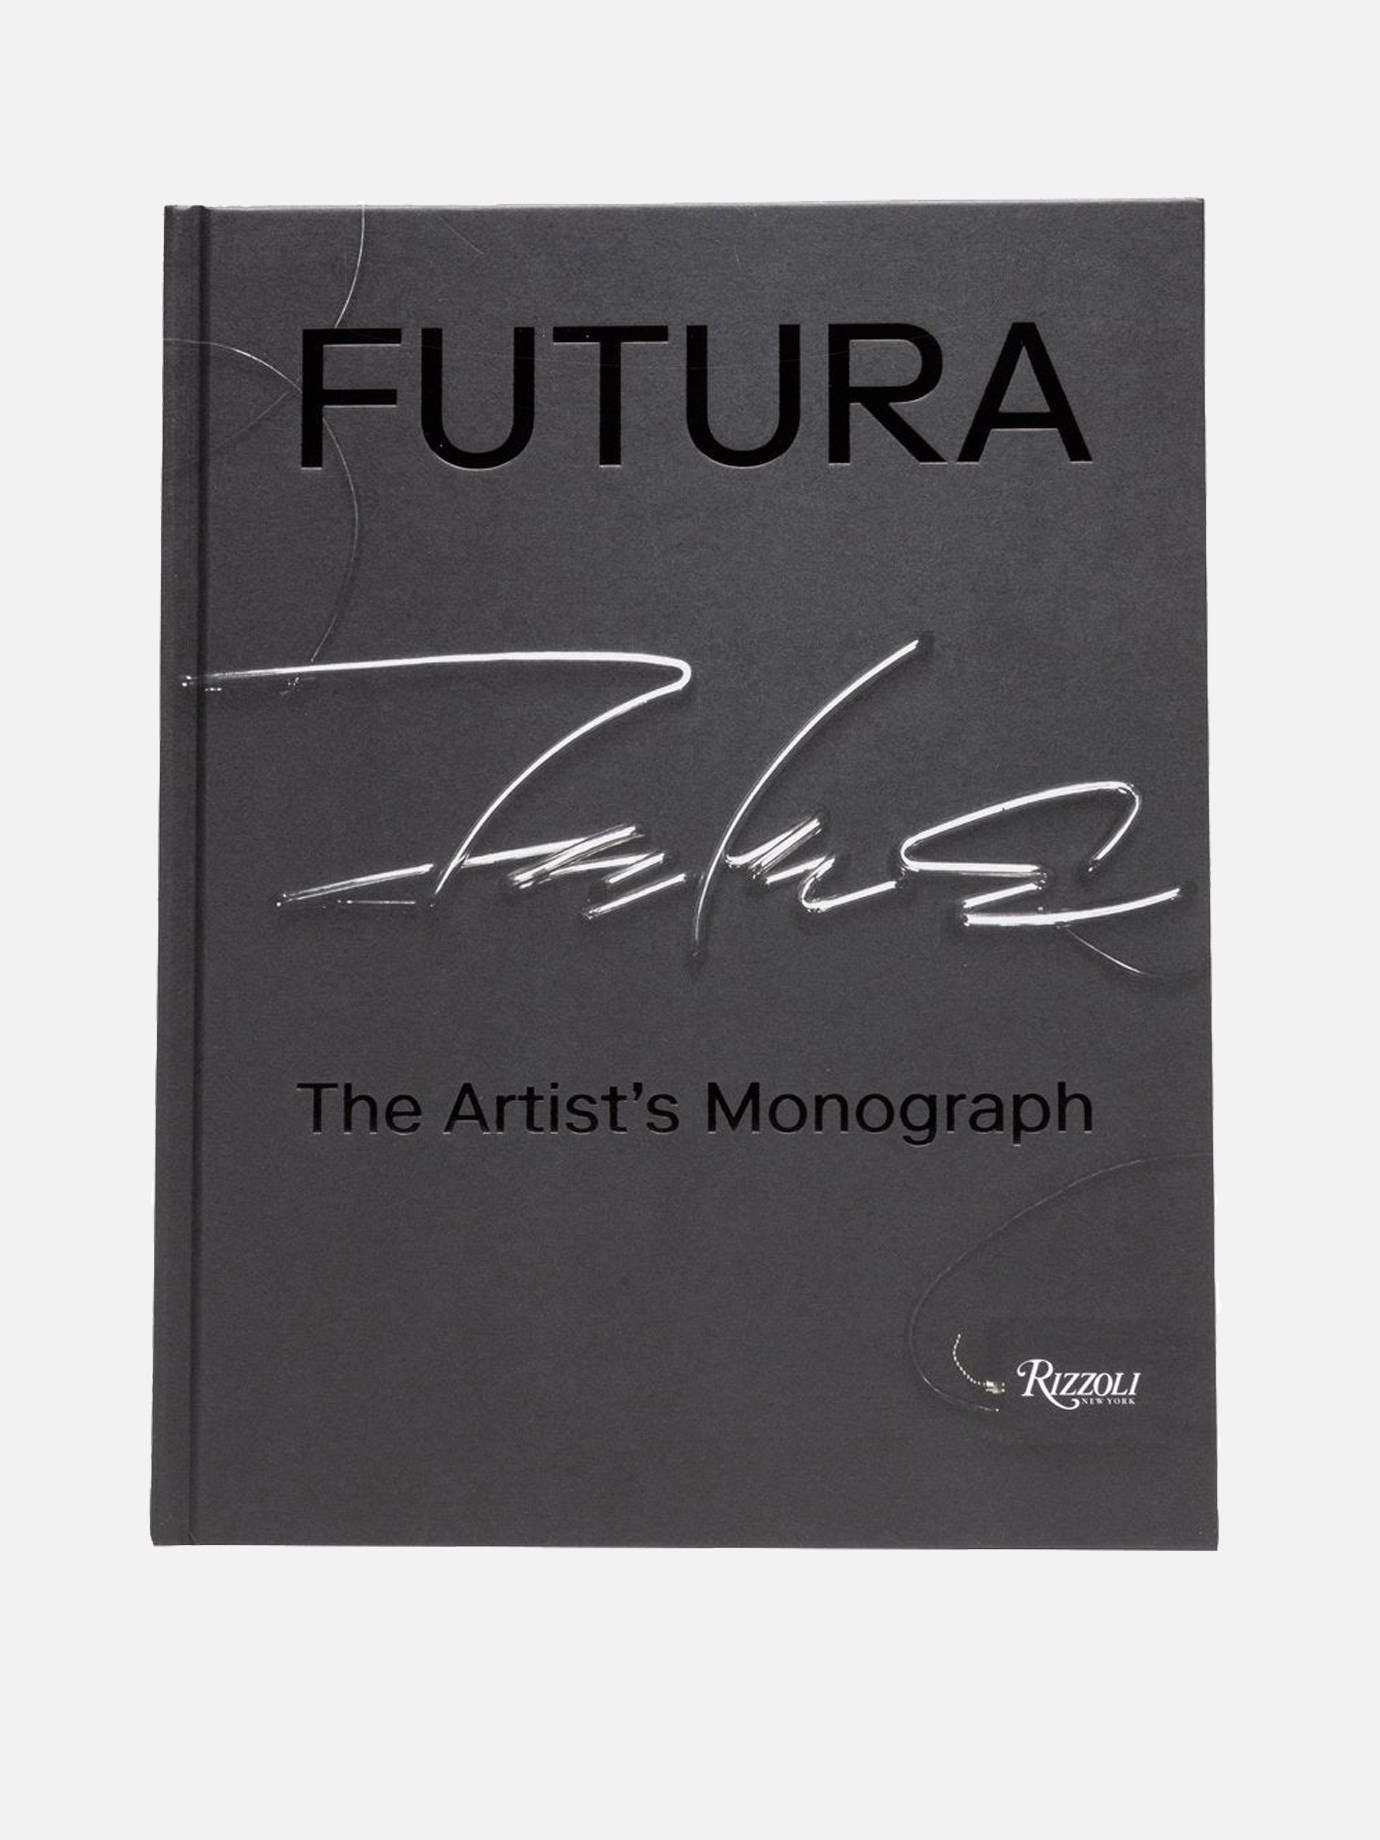 Rizzoli Futura  The Artist's Monograph  by Rizzoli